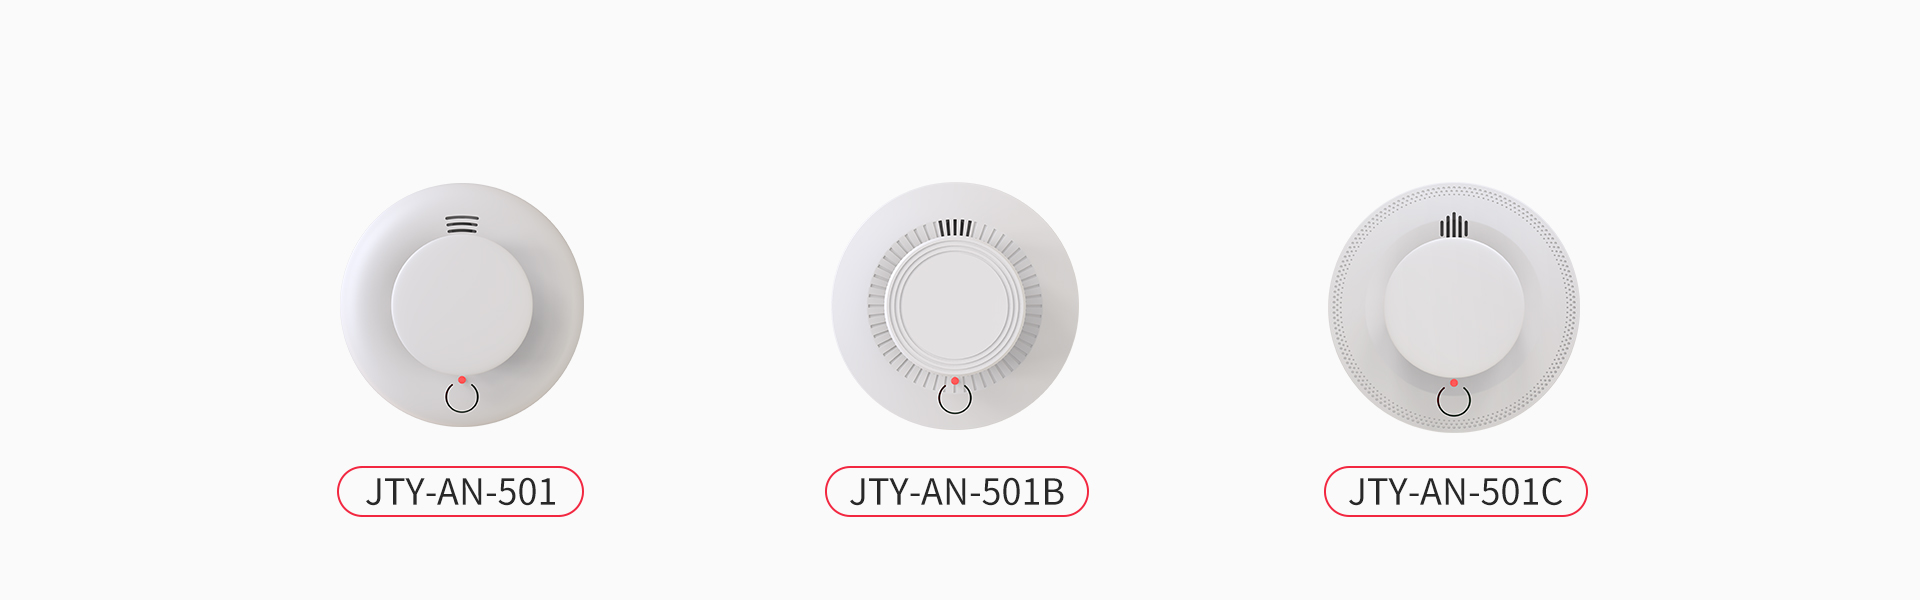 火灾烟雾探测报警器：JTY-AN-501系列